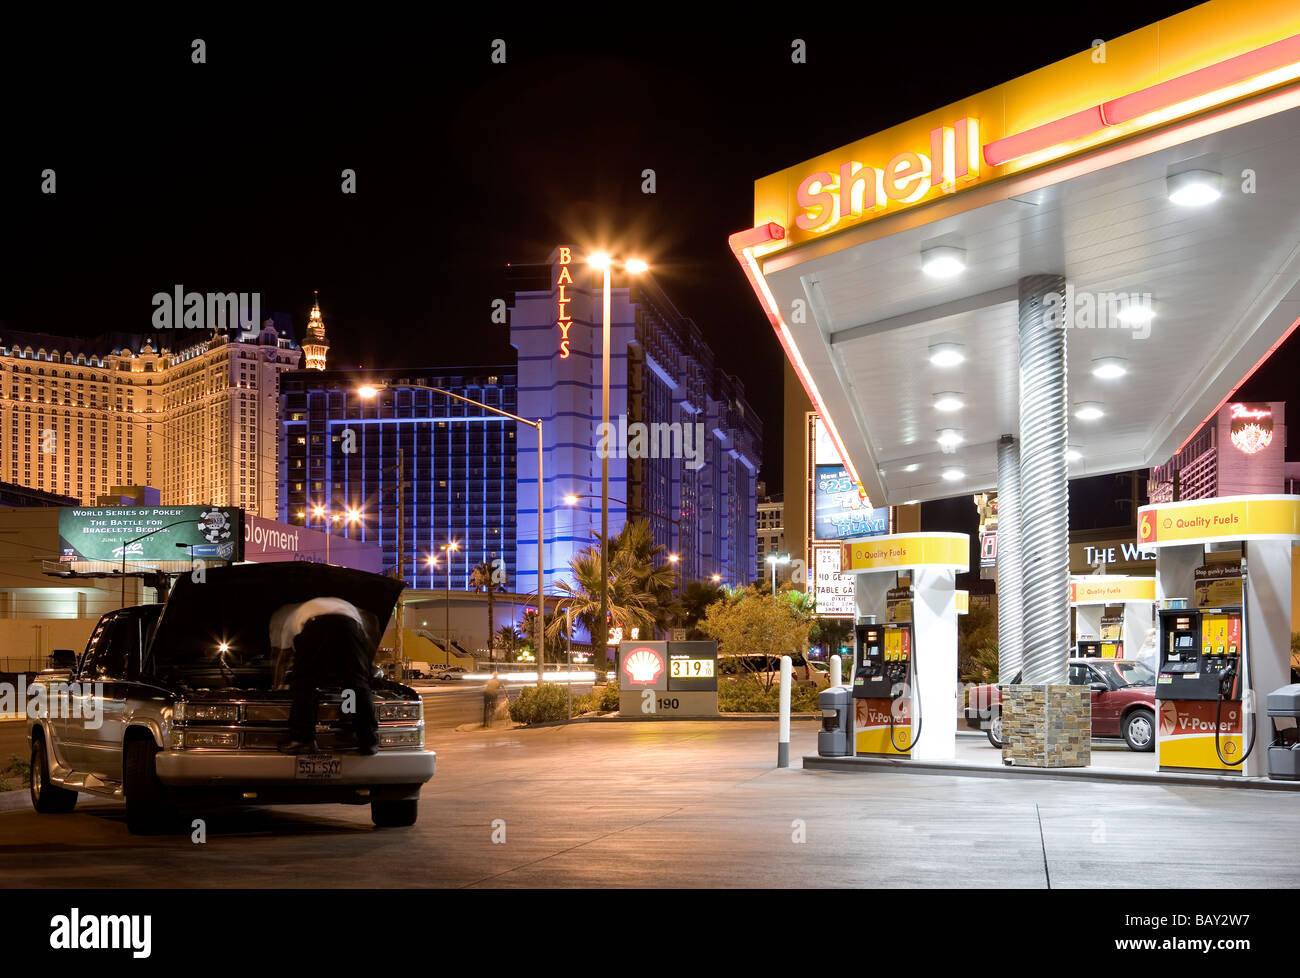 Petrol Station, Gas Station, Backyard of the Las Vegas Casinos, Las Vegas, Nevada, USA Stock Photo